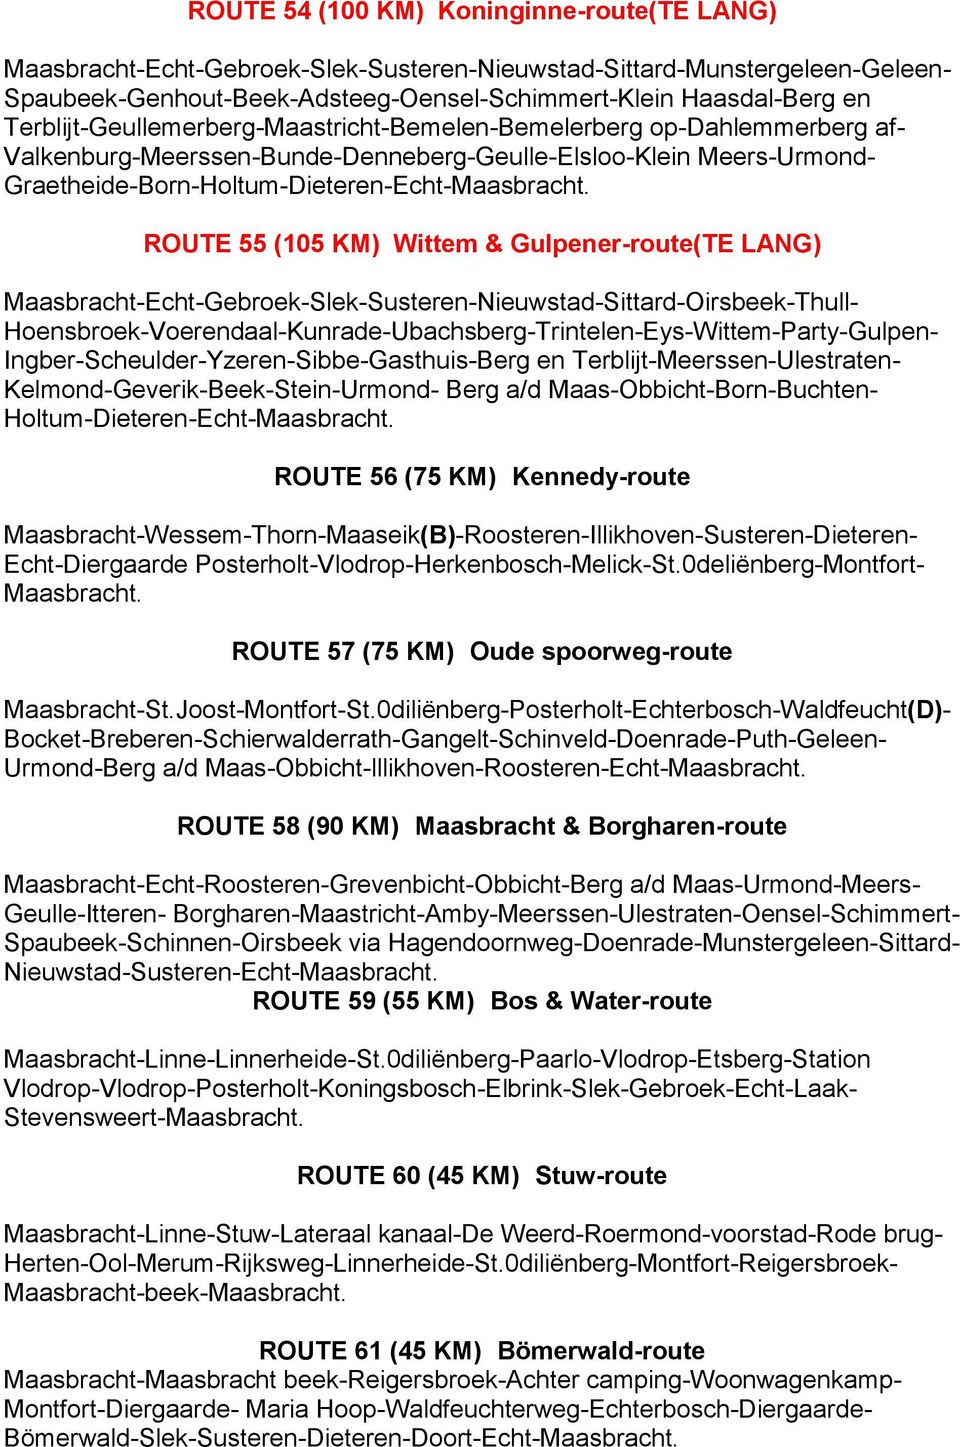 KM) Wittem & Gulpener-route(TE LANG) Maasbracht-Echt-Gebroek-Slek-Susteren-Nieuwstad-Sittard-Oirsbeek-Thull- Hoensbroek-Voerendaal-Kunrade-Ubachsberg-Trintelen-Eys-Wittem-Party-Gulpen-